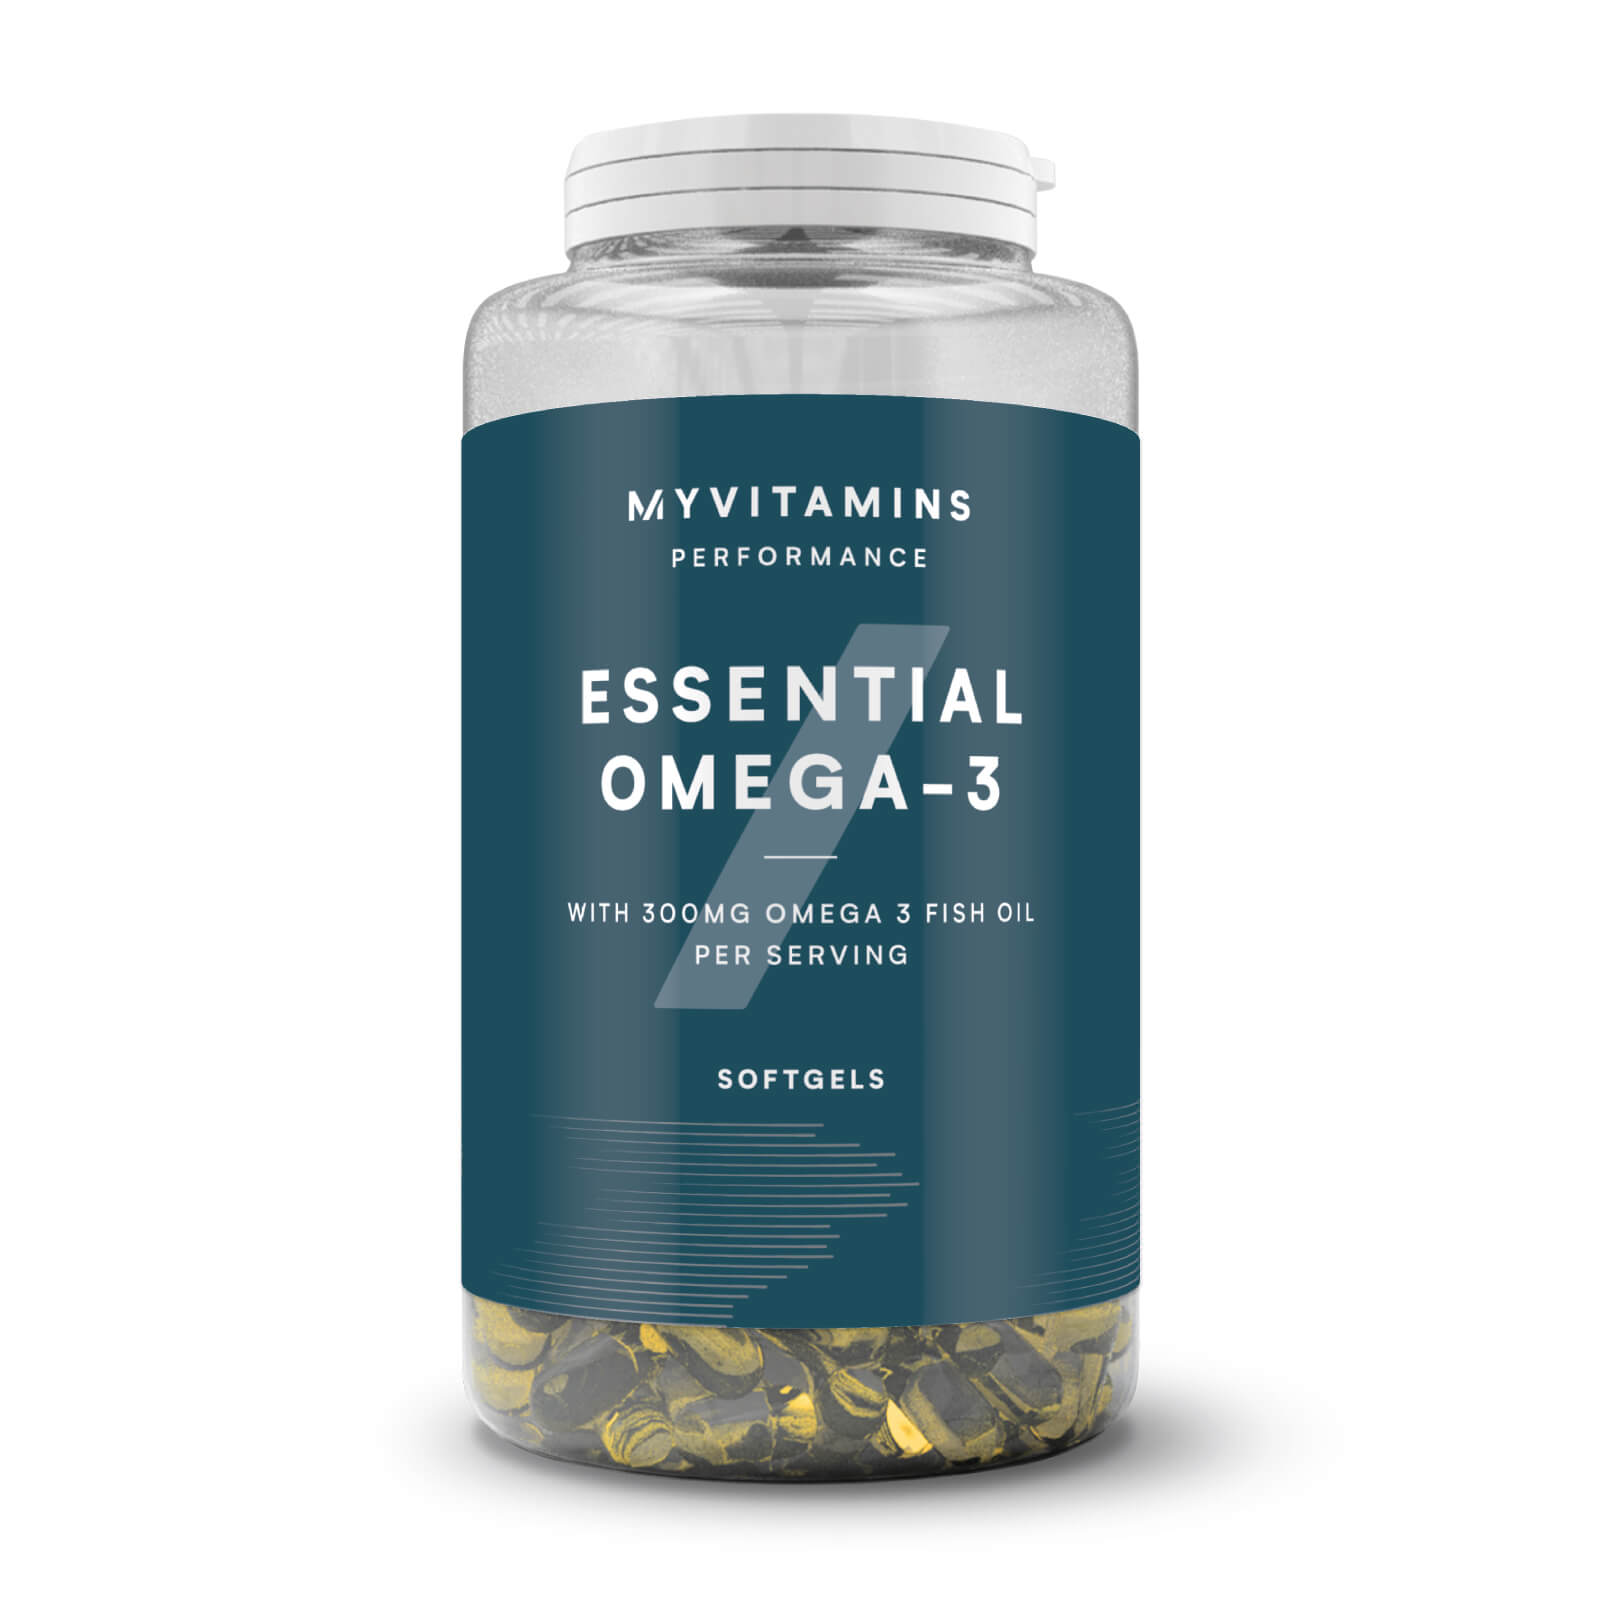 Myvitamins Omega 3 - 1000 mg 18% EPA / 12% DHA